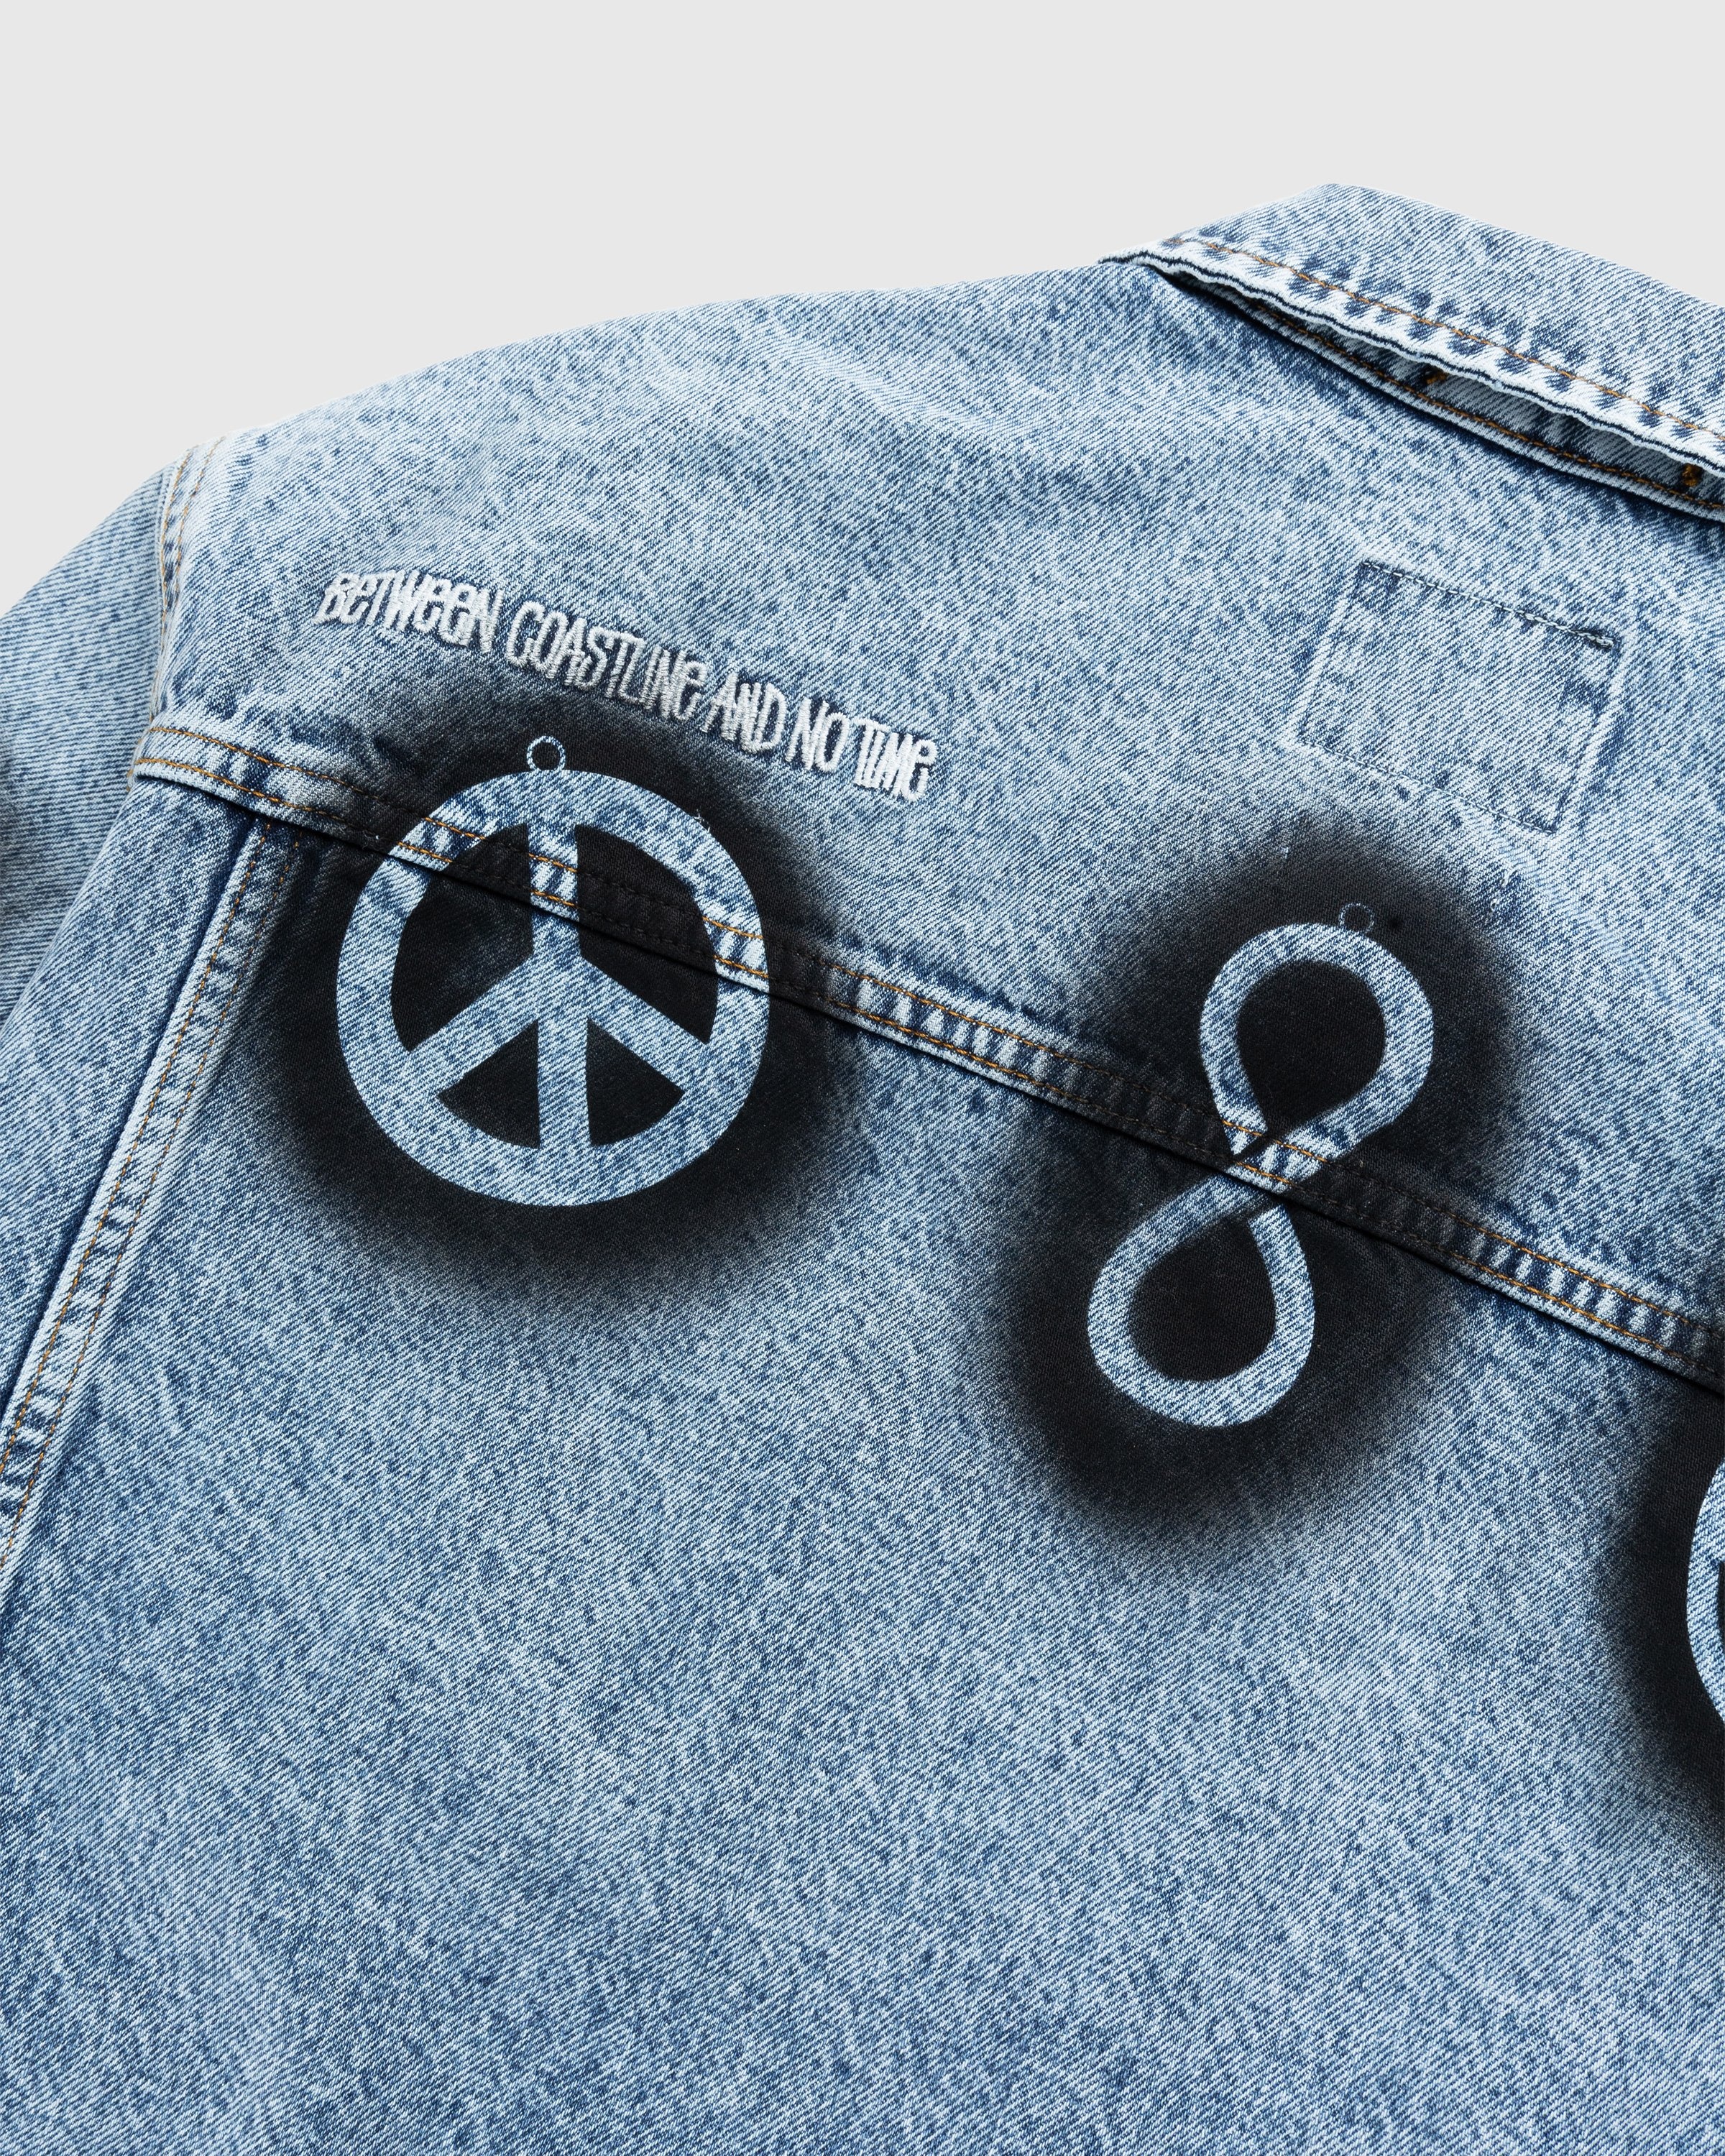 Stüssy x Dries van Noten – Stencil Denim Jacket - Outerwear - Black - Image 5